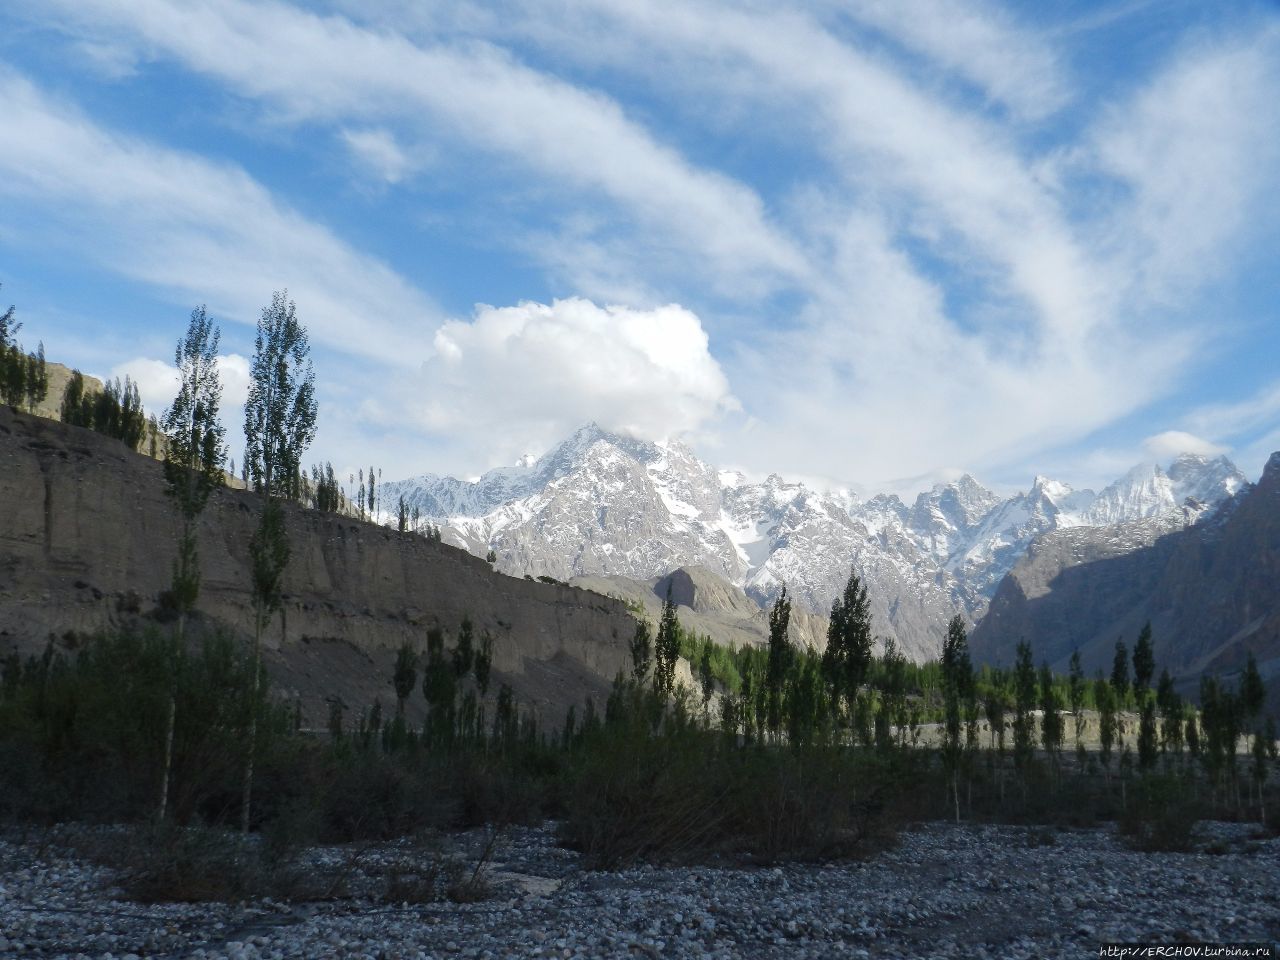 Пакистан. Ч — 25. Хунджерабский перевал и национальный парк Каримабад, Пакистан